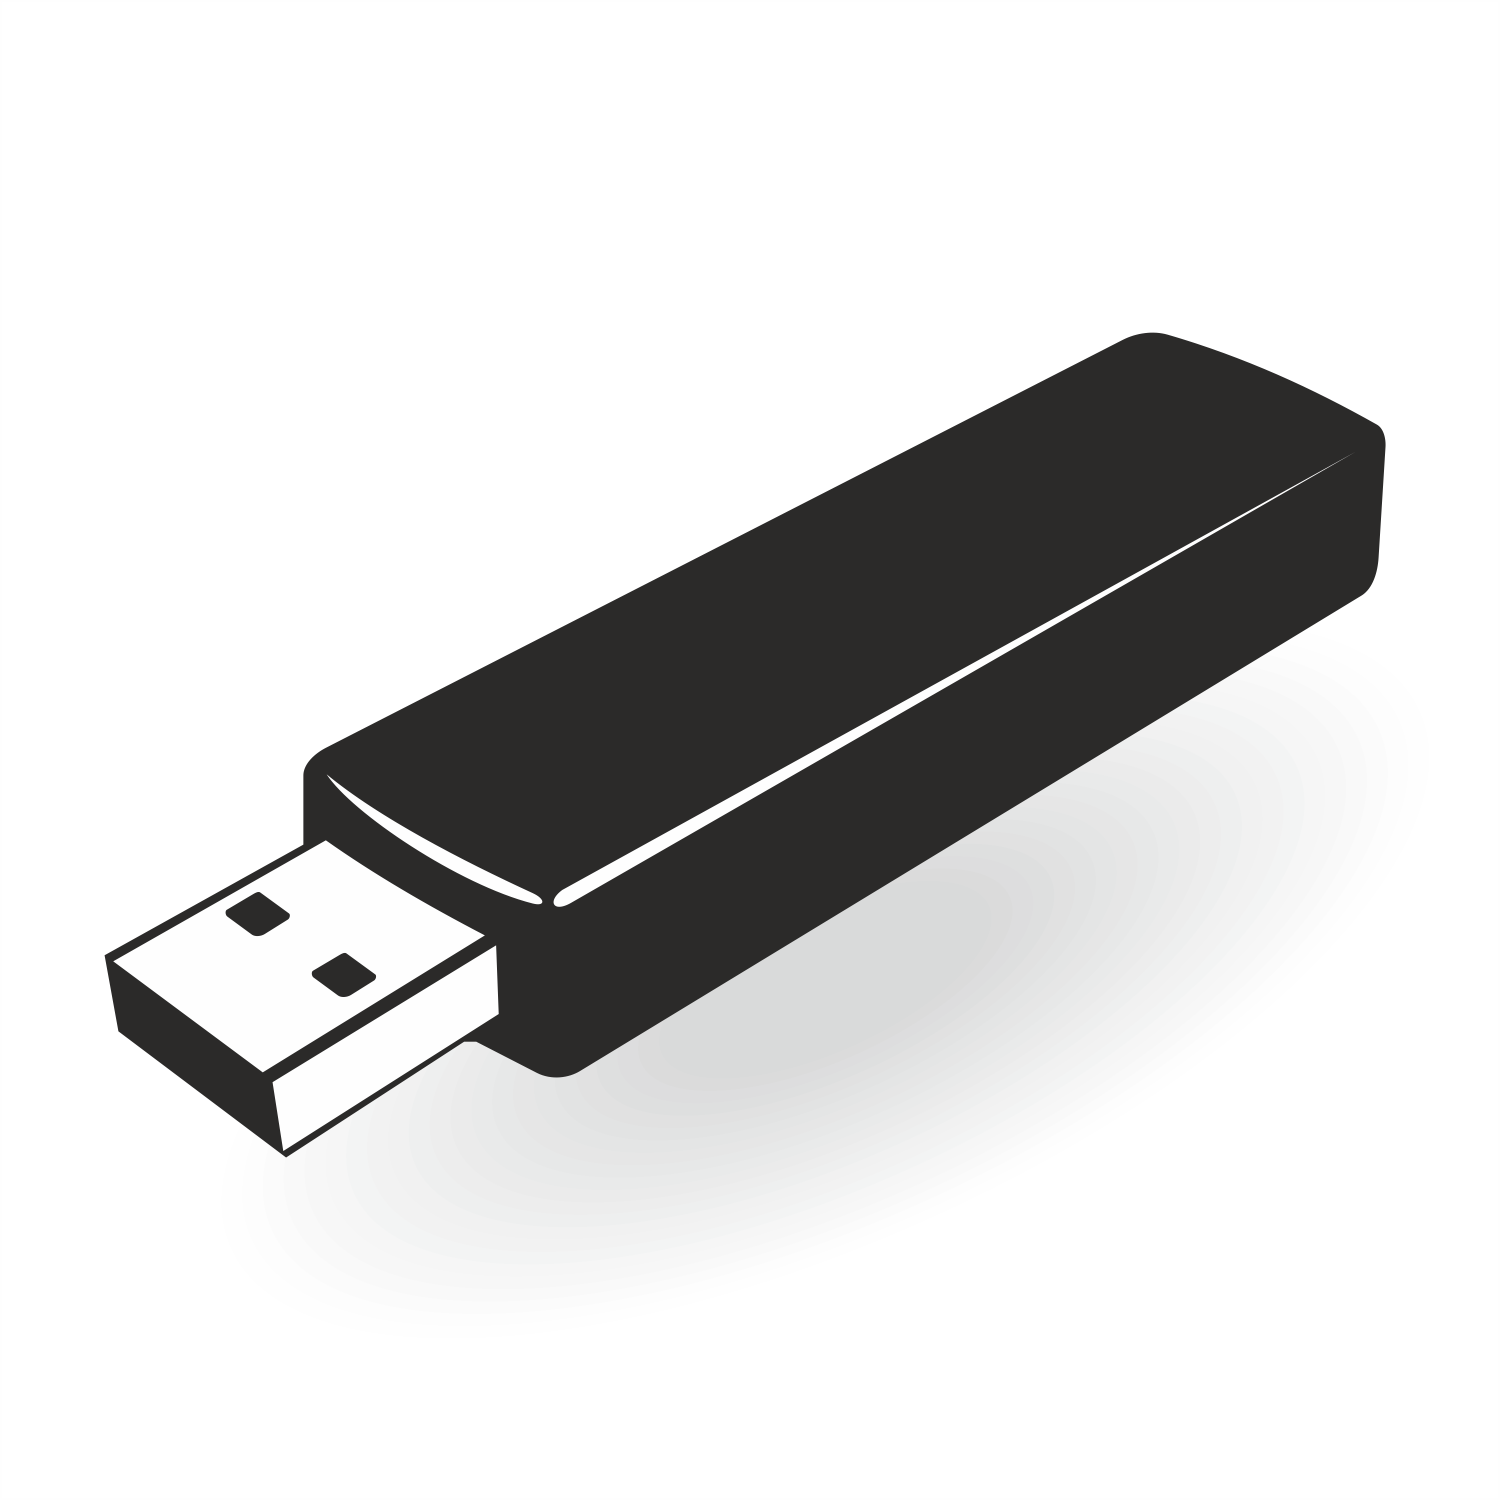 USB Drive Vector